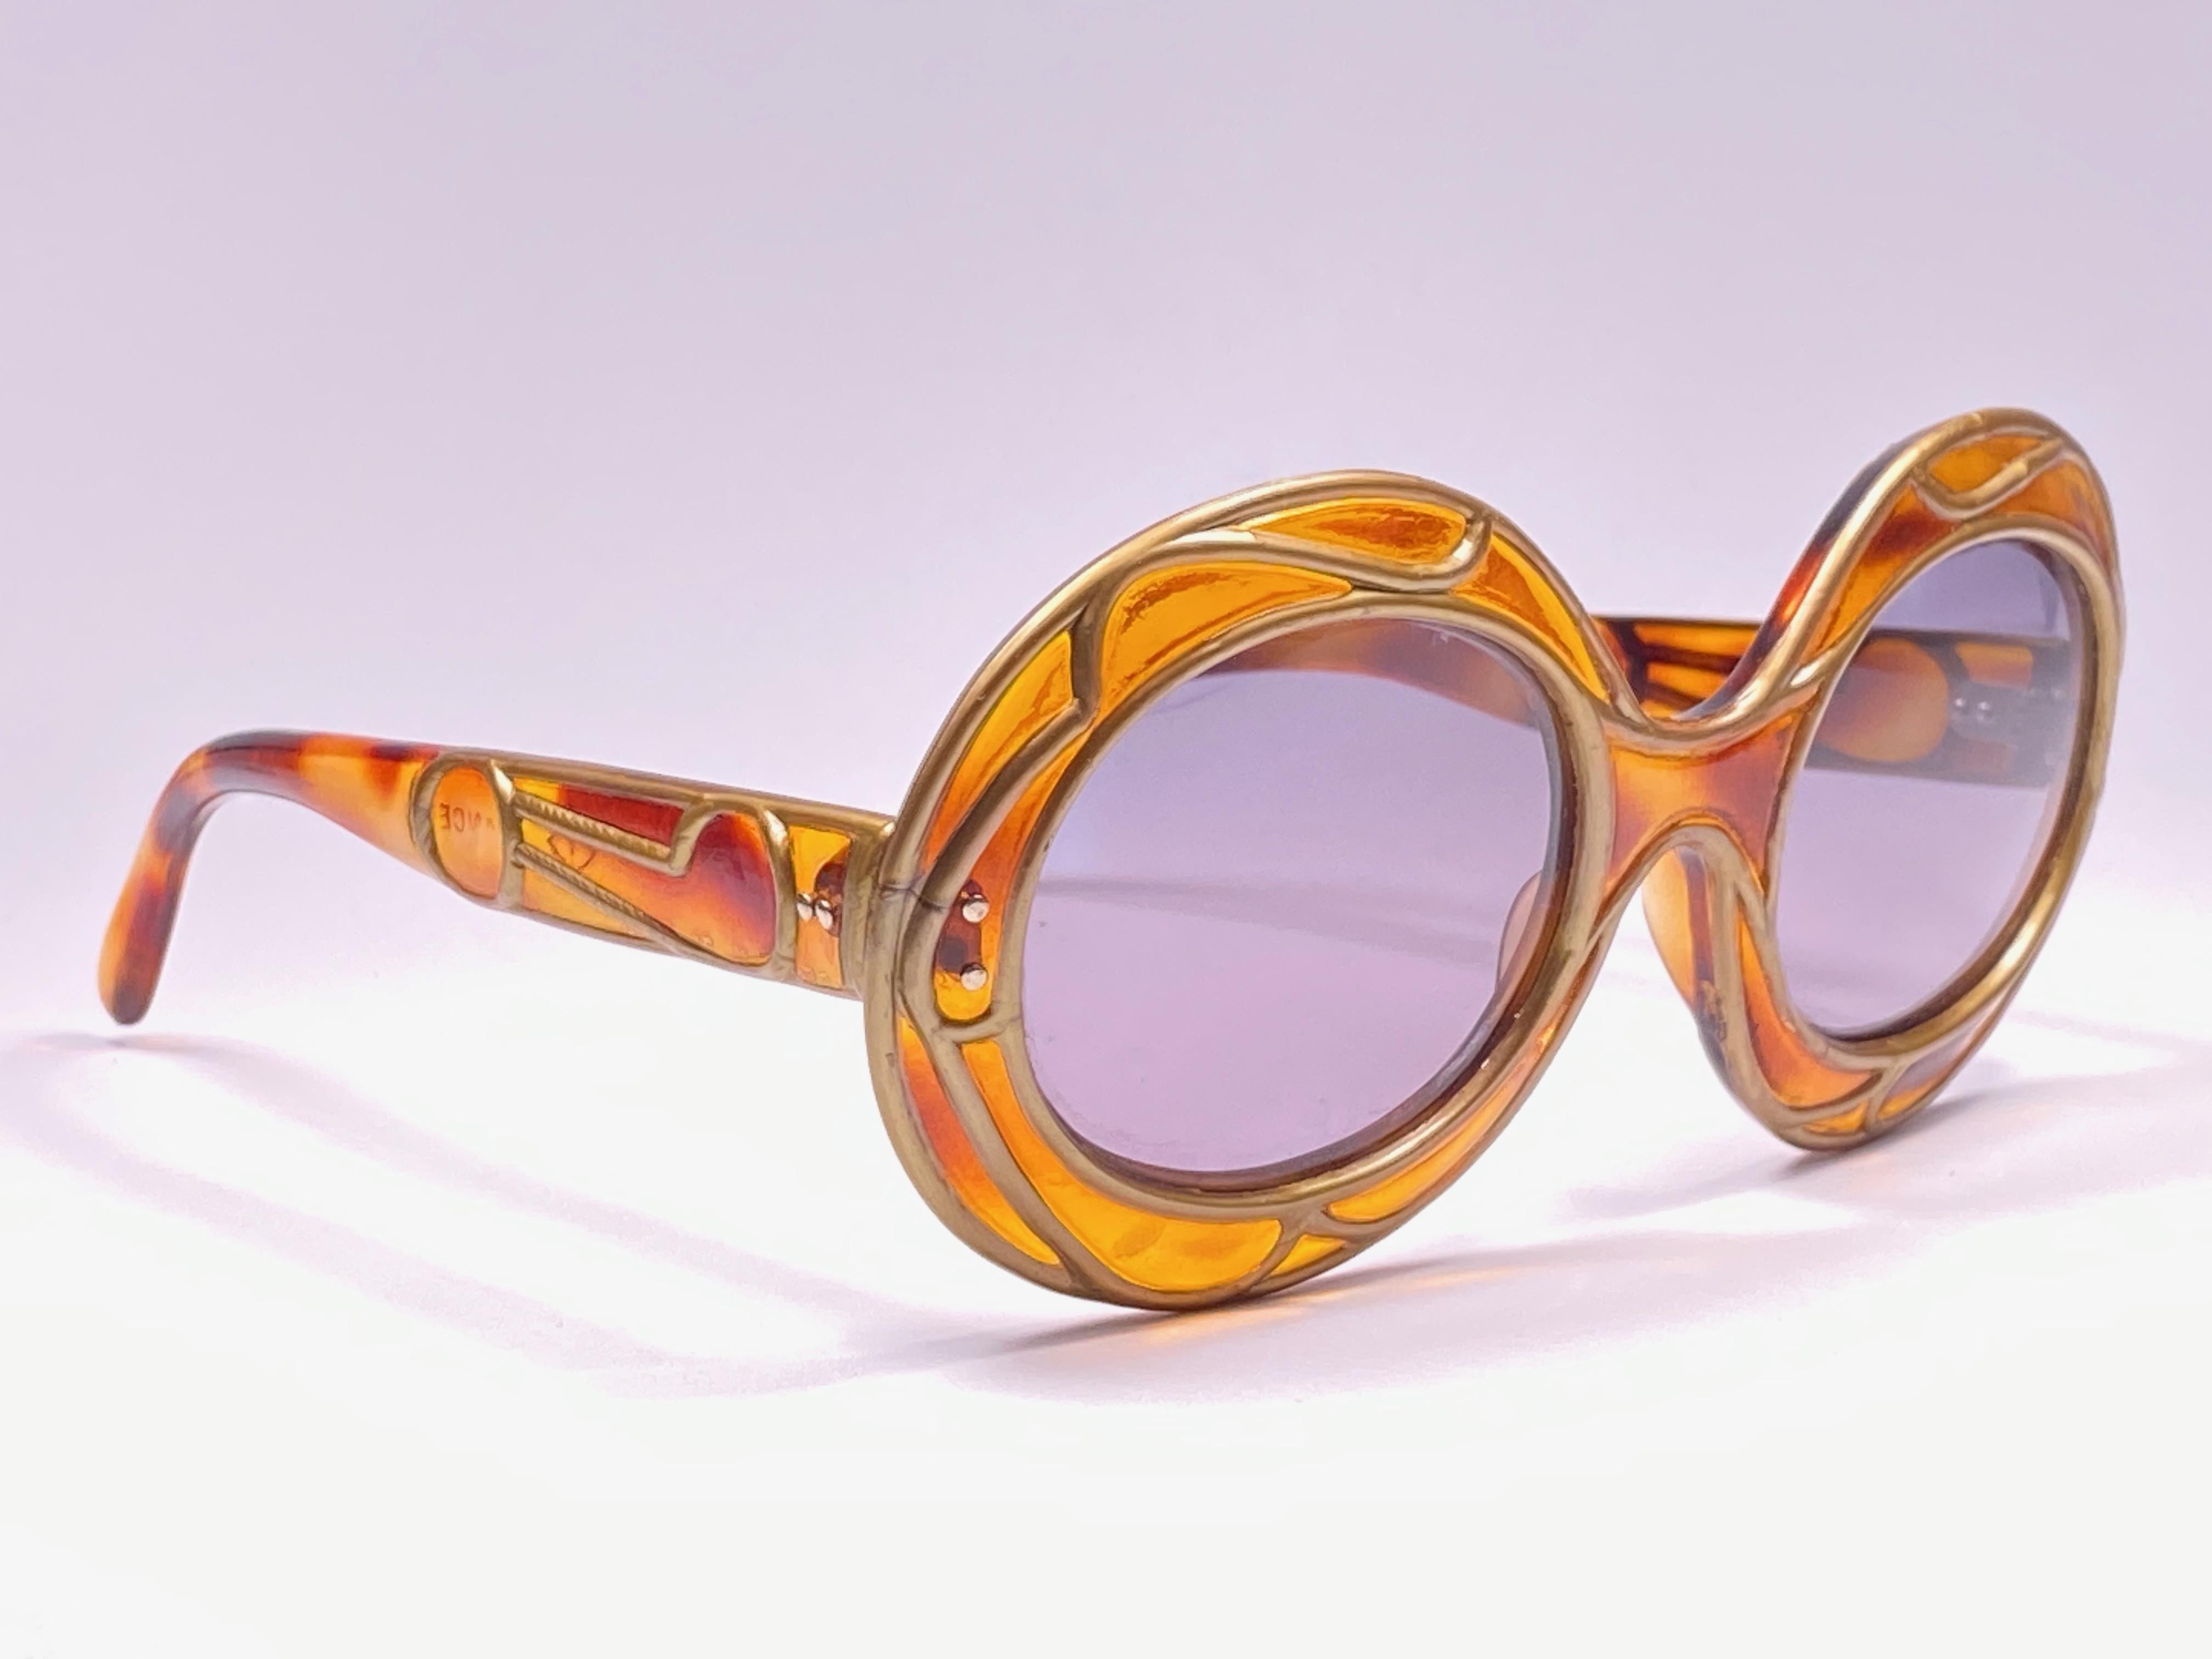 1950's women's sunglasses